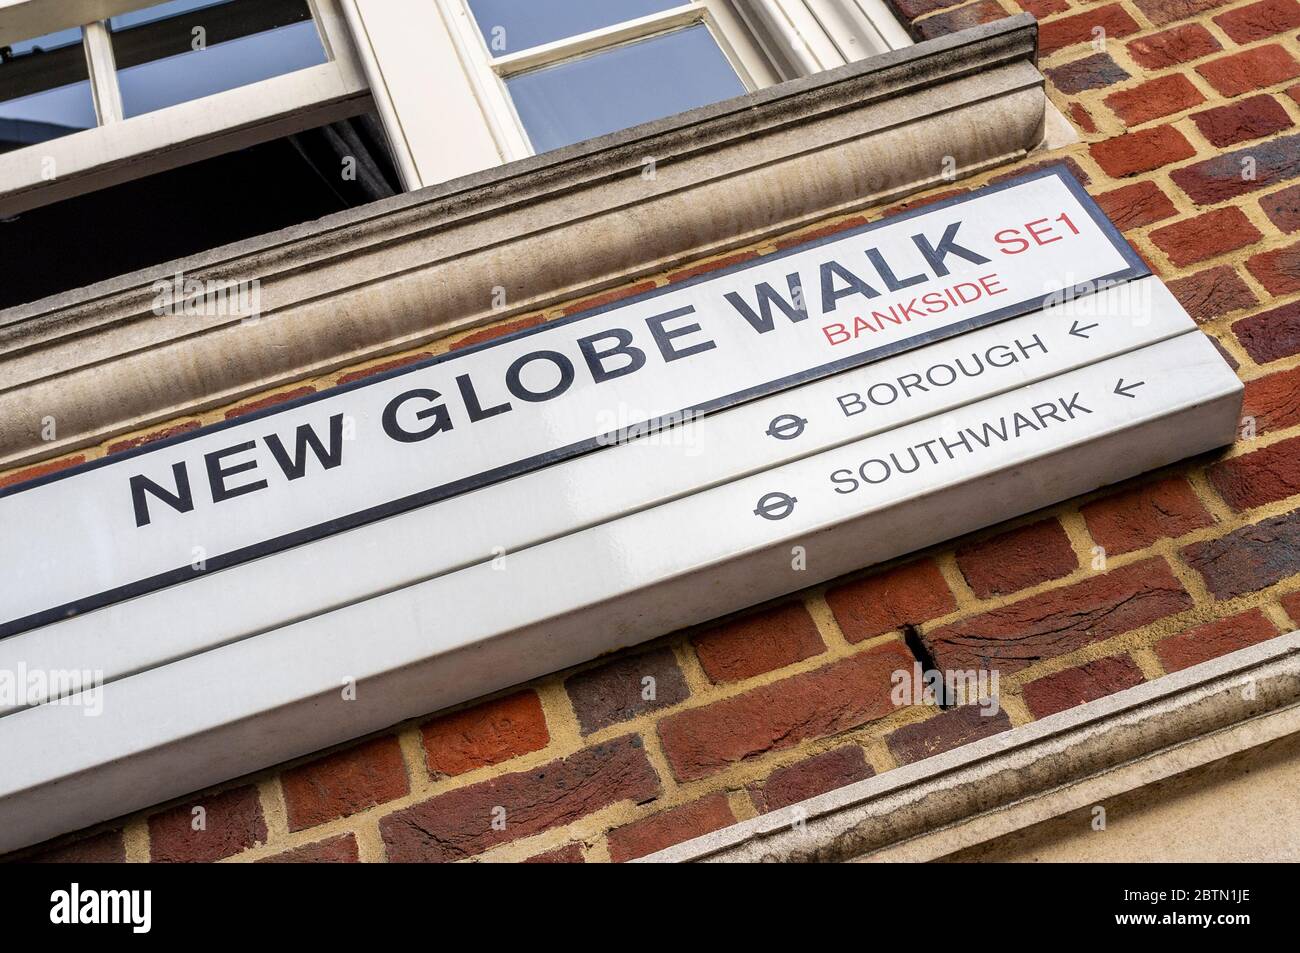 Señal de nombre de calle para New Globe Walk, con indicaciones de información turística en el barrio de Southwark en Londres, Inglaterra Foto de stock